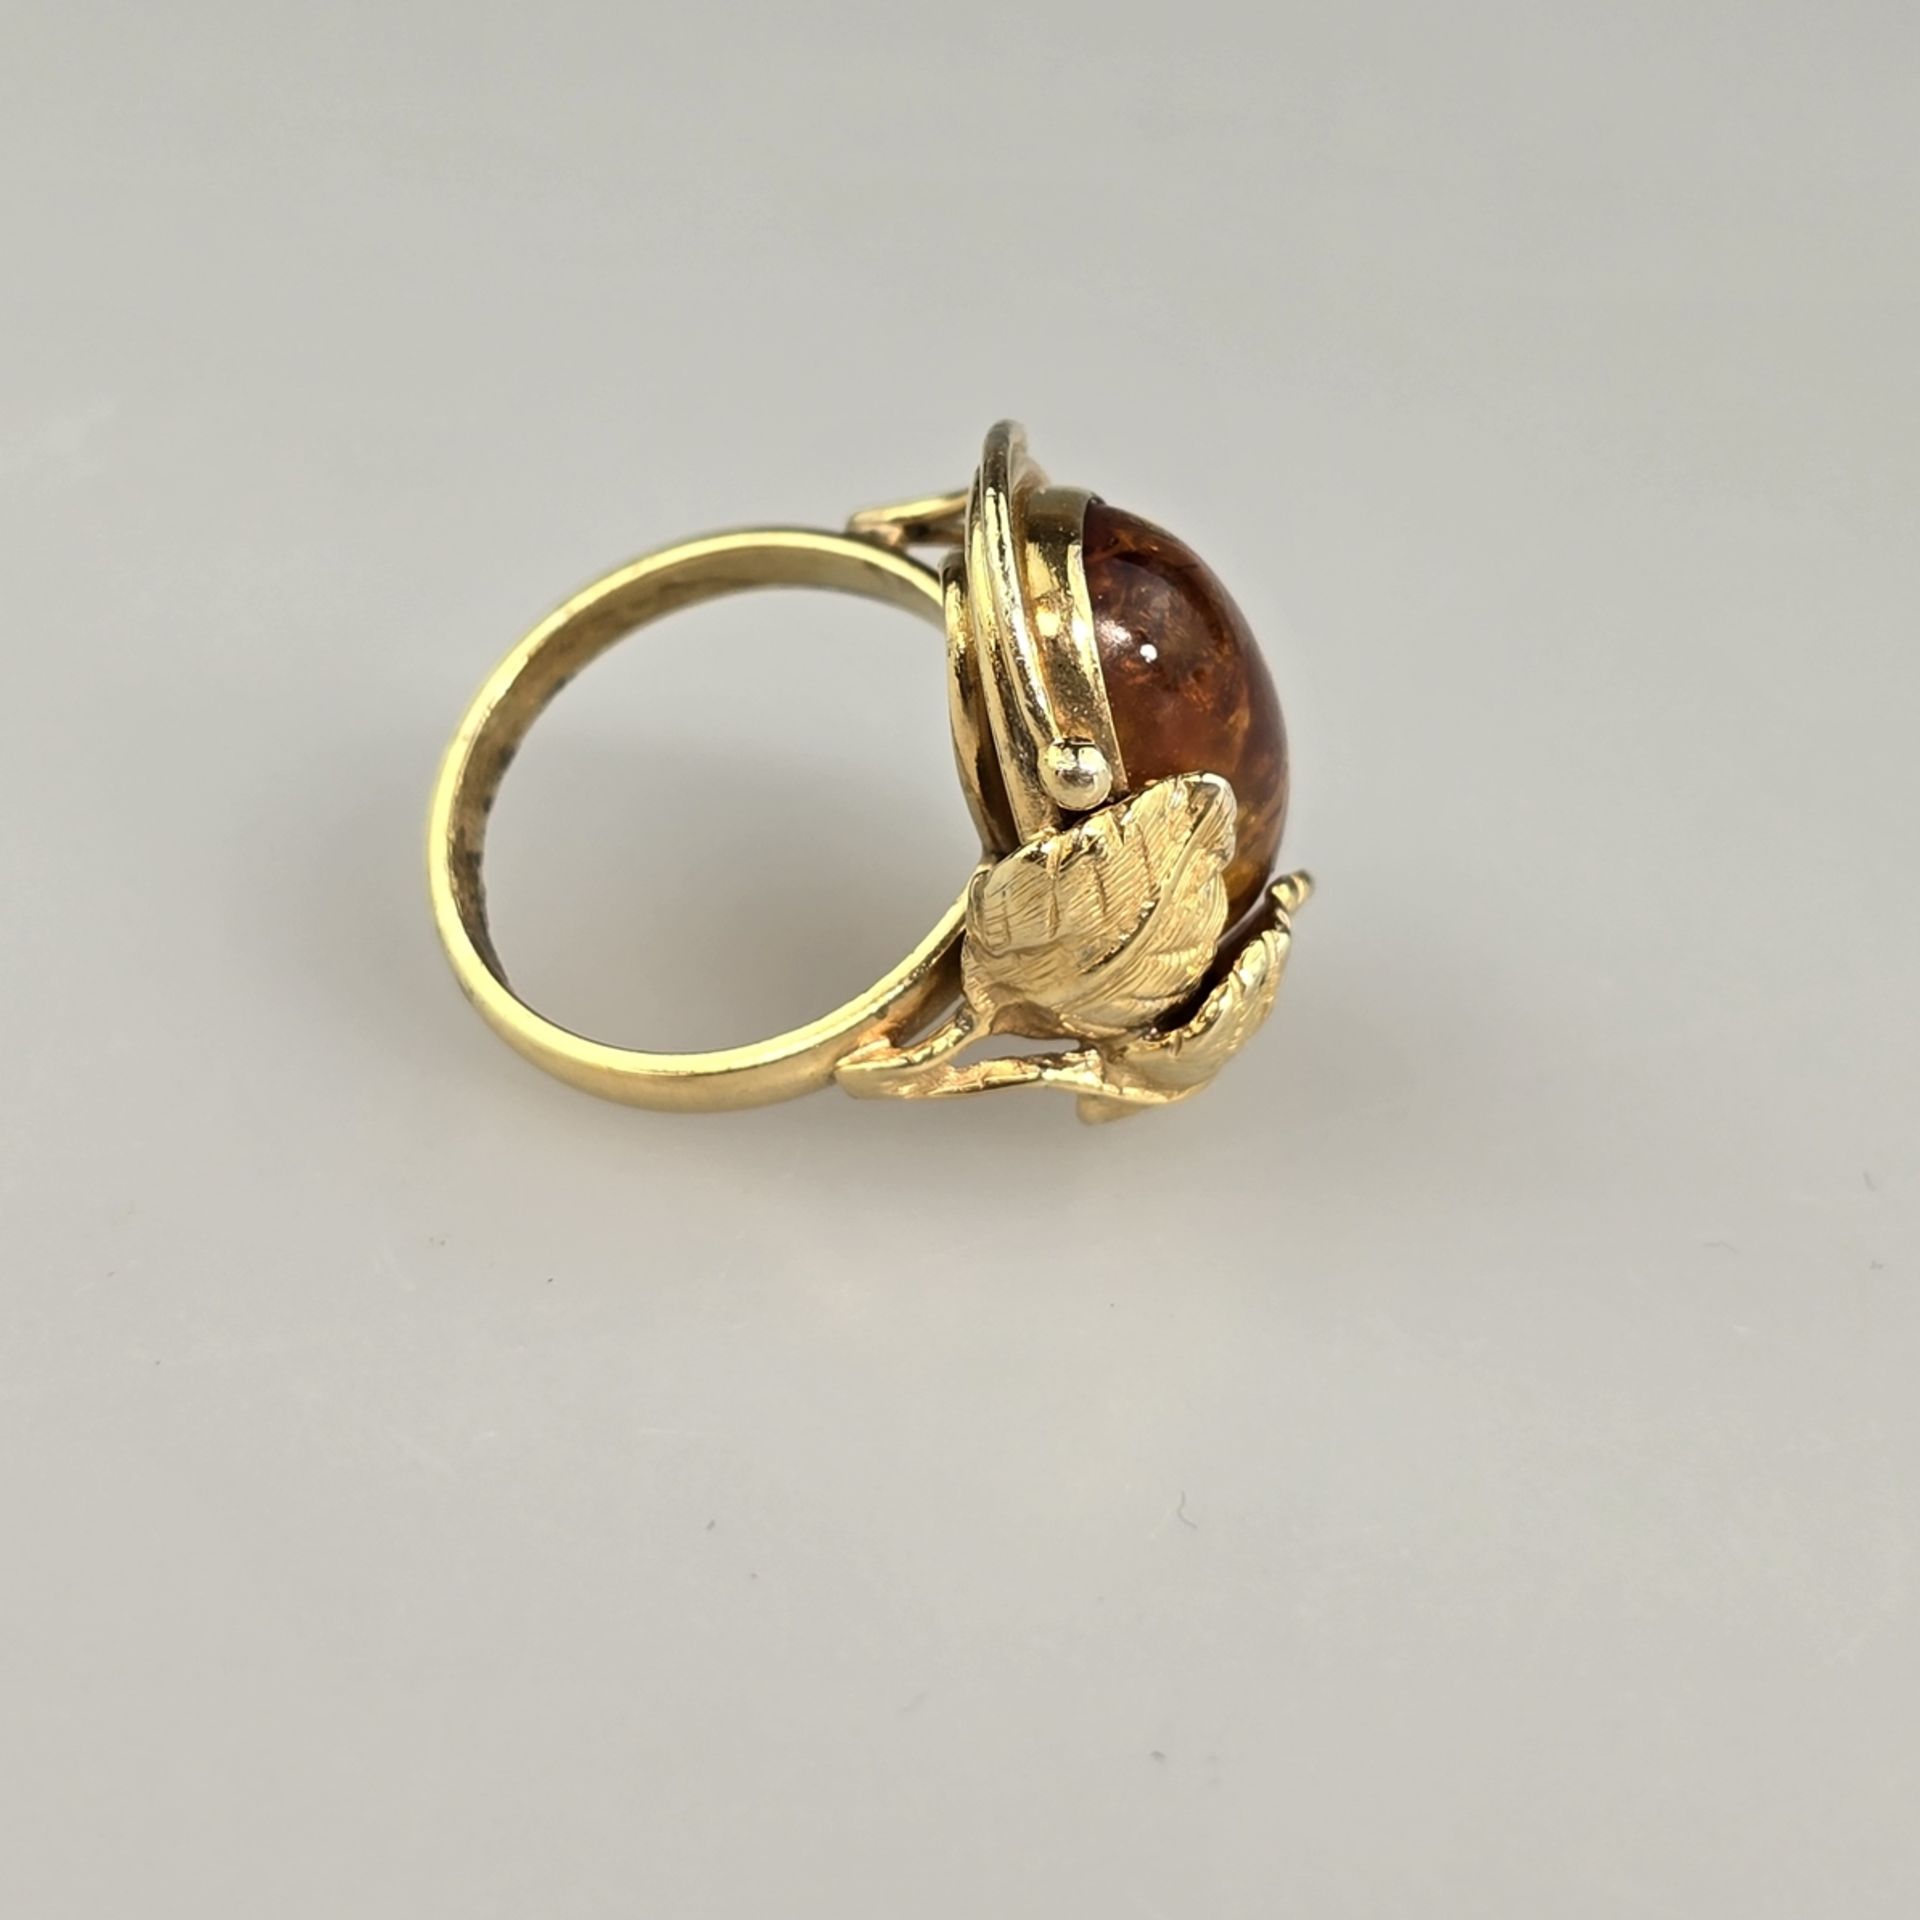 Bernsteinring - Silber 925/000, vergoldet, außen gestempelt, Bernstein von ca.18 x 12 mm, Ringgröße - Bild 5 aus 8